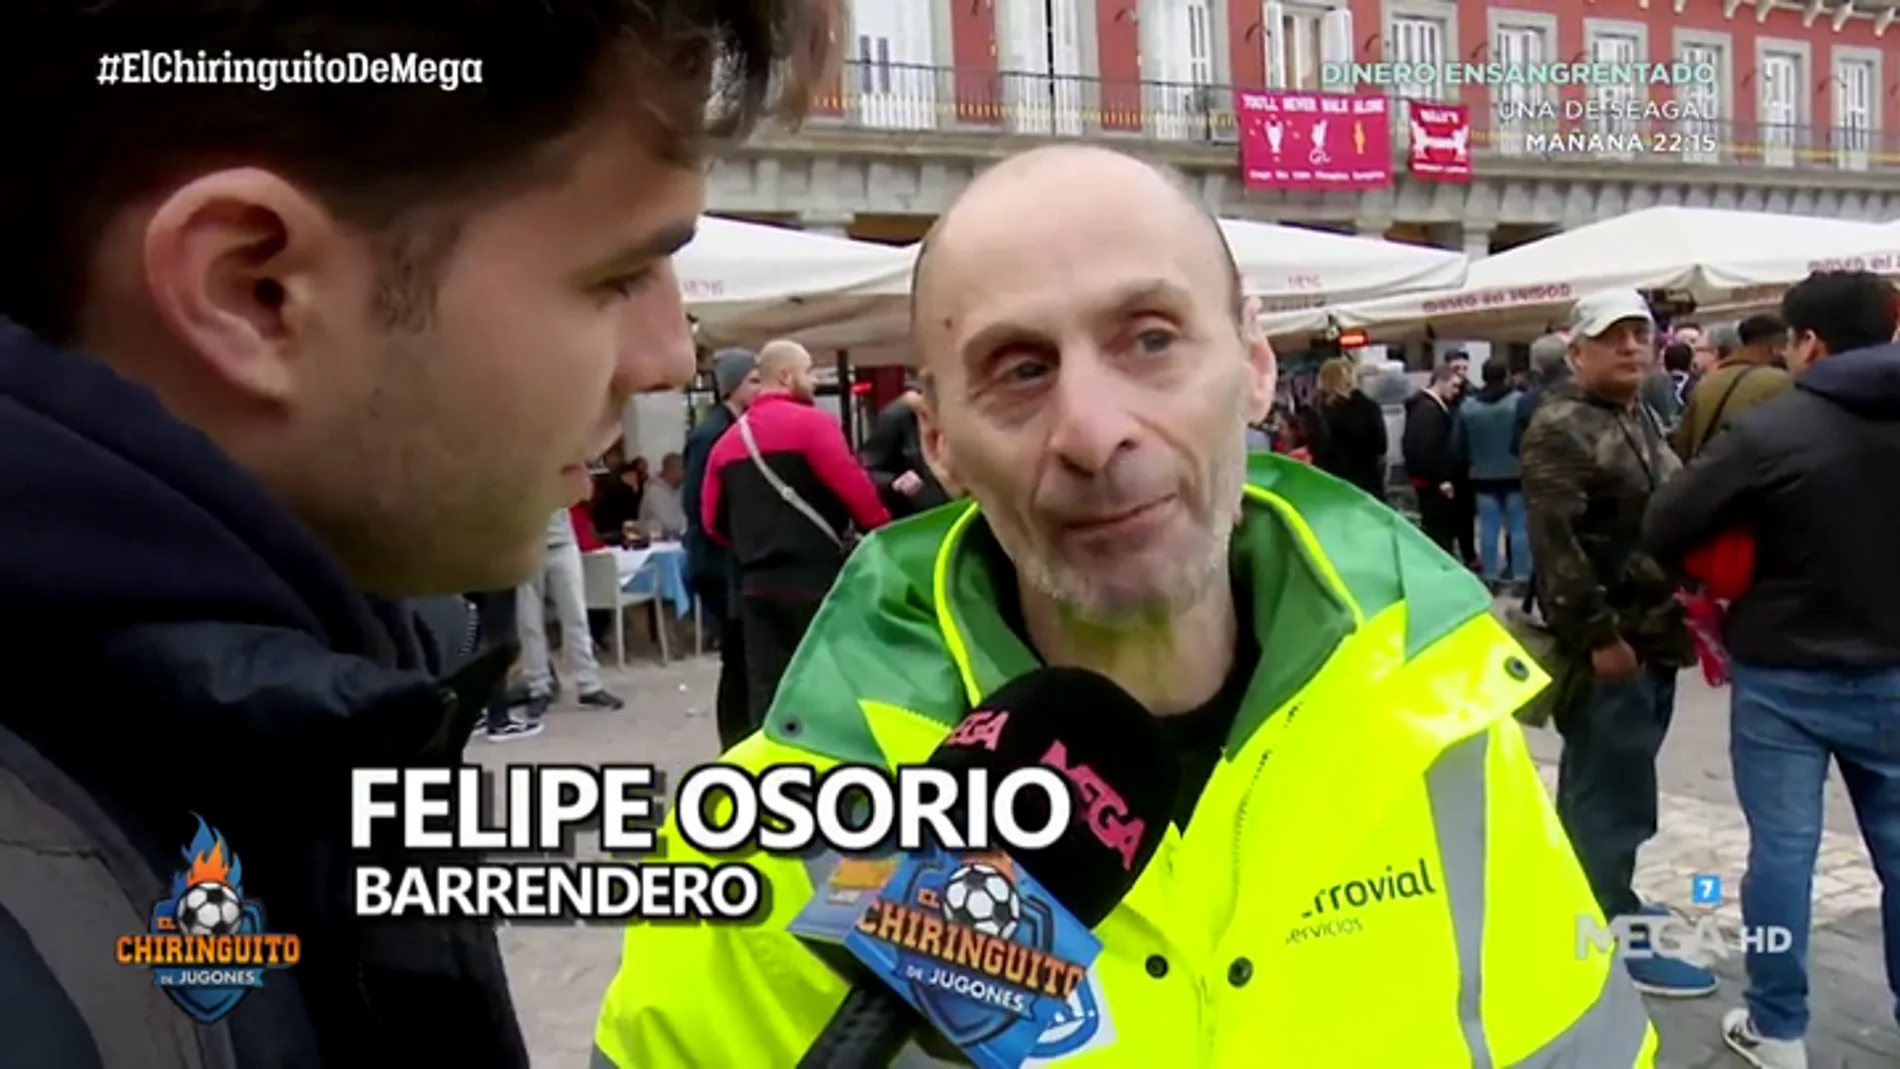 La historia de Felipe Osorio, el barrendero que lidia con los hooligans para mantener limpio Madrid